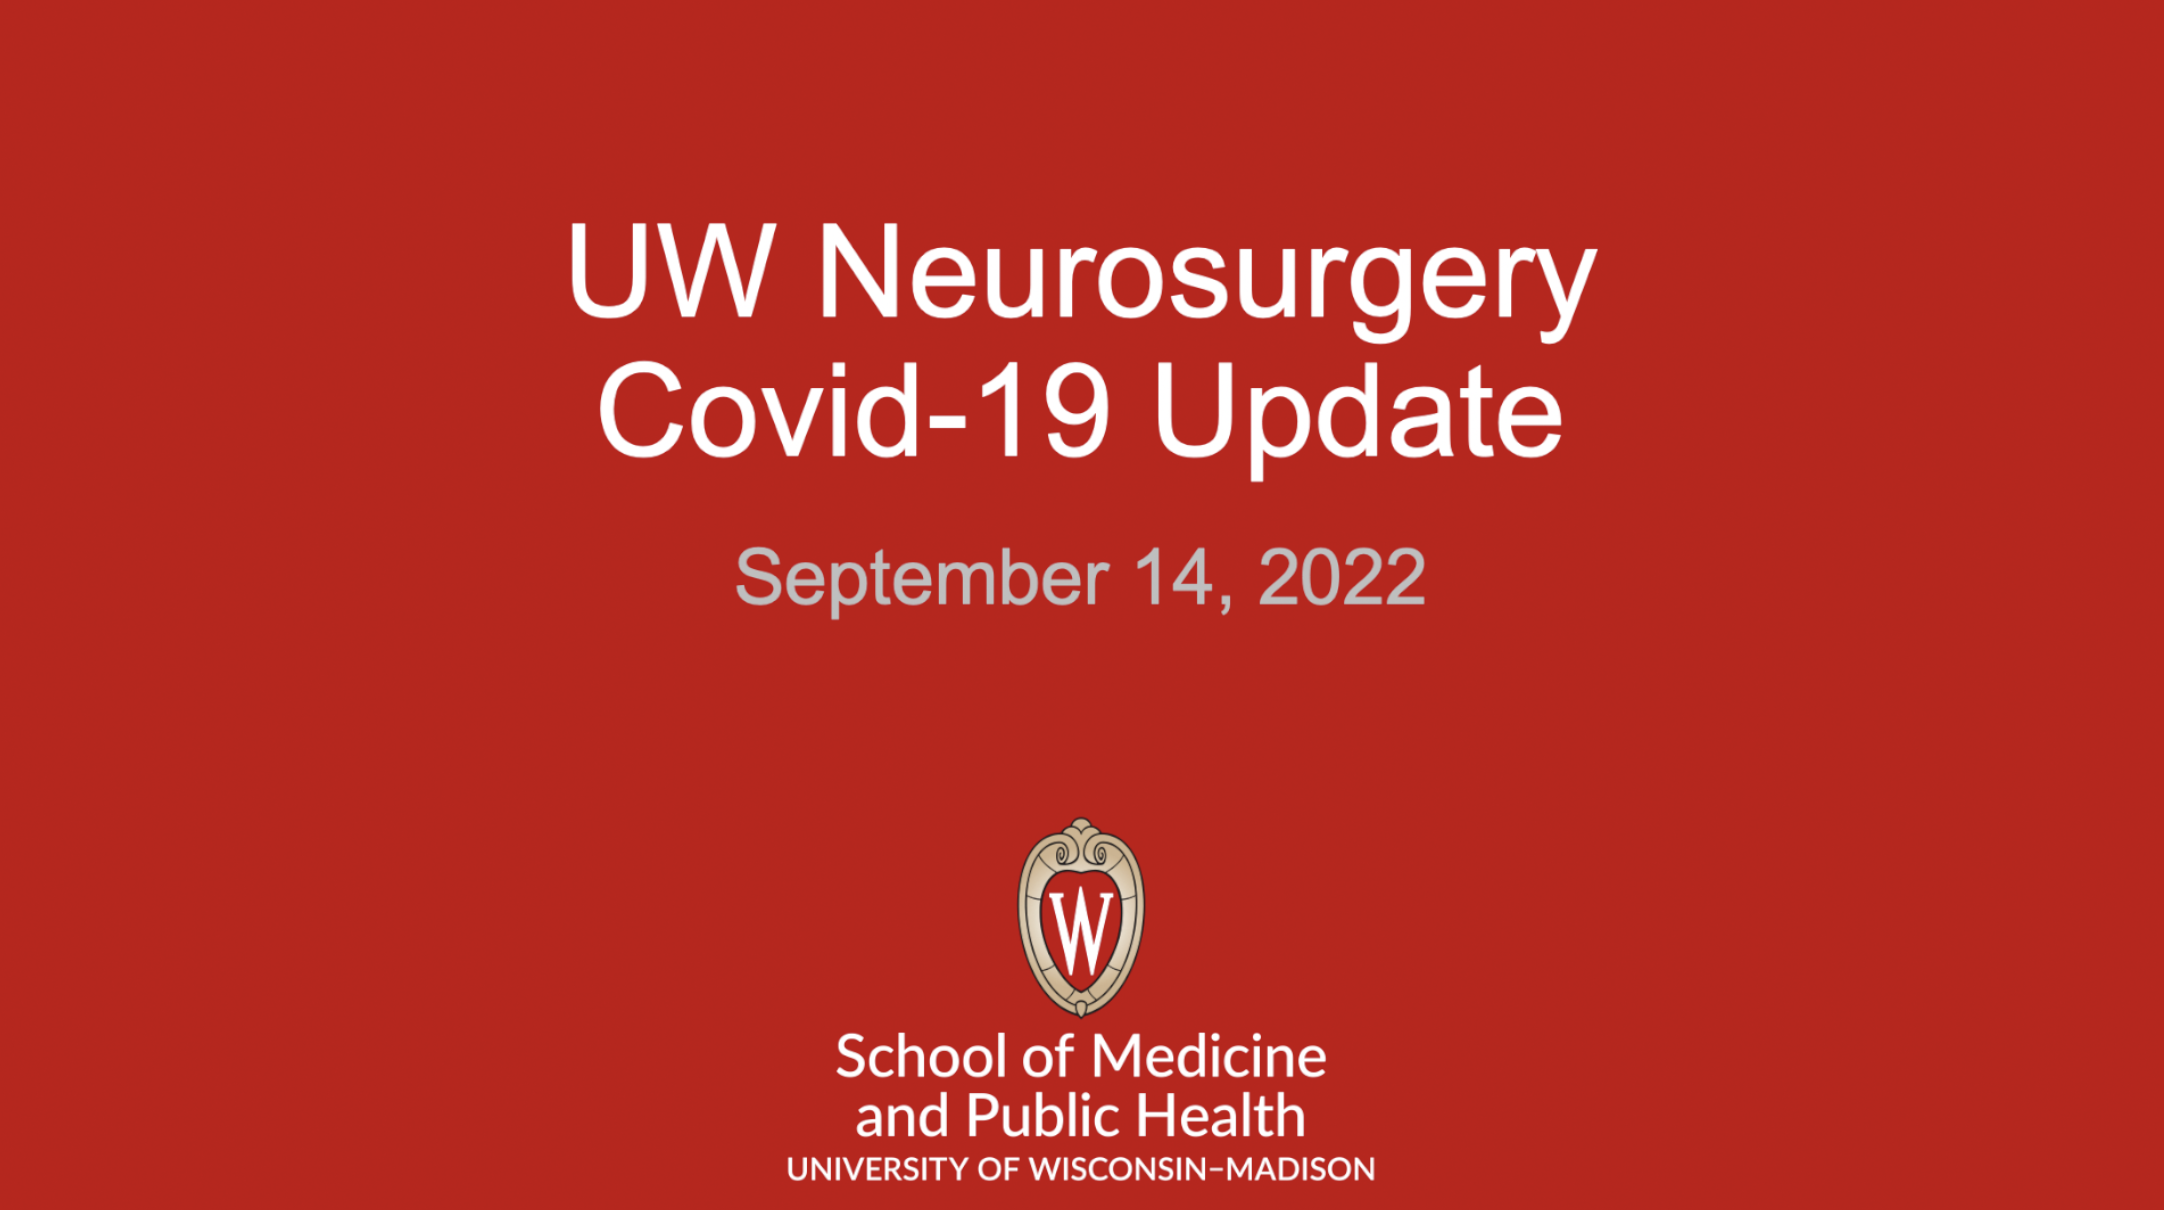 Covid-19 Update Sept 14, 2022